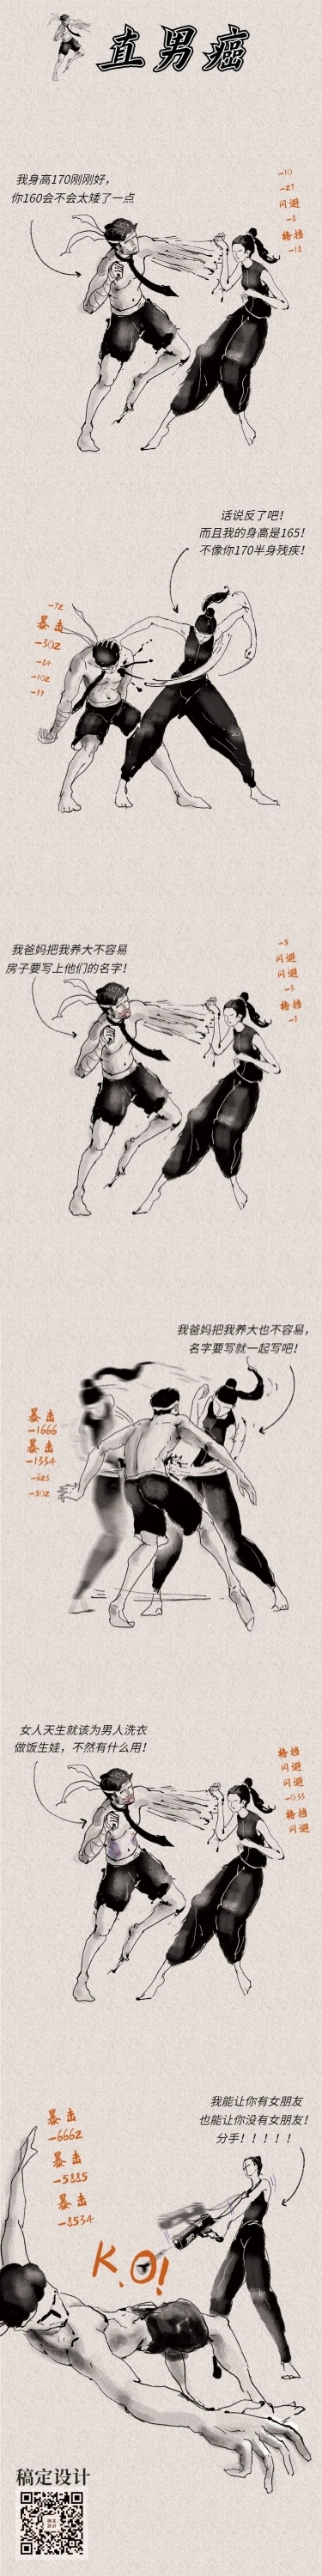 水墨中国风创意条漫漫画长图